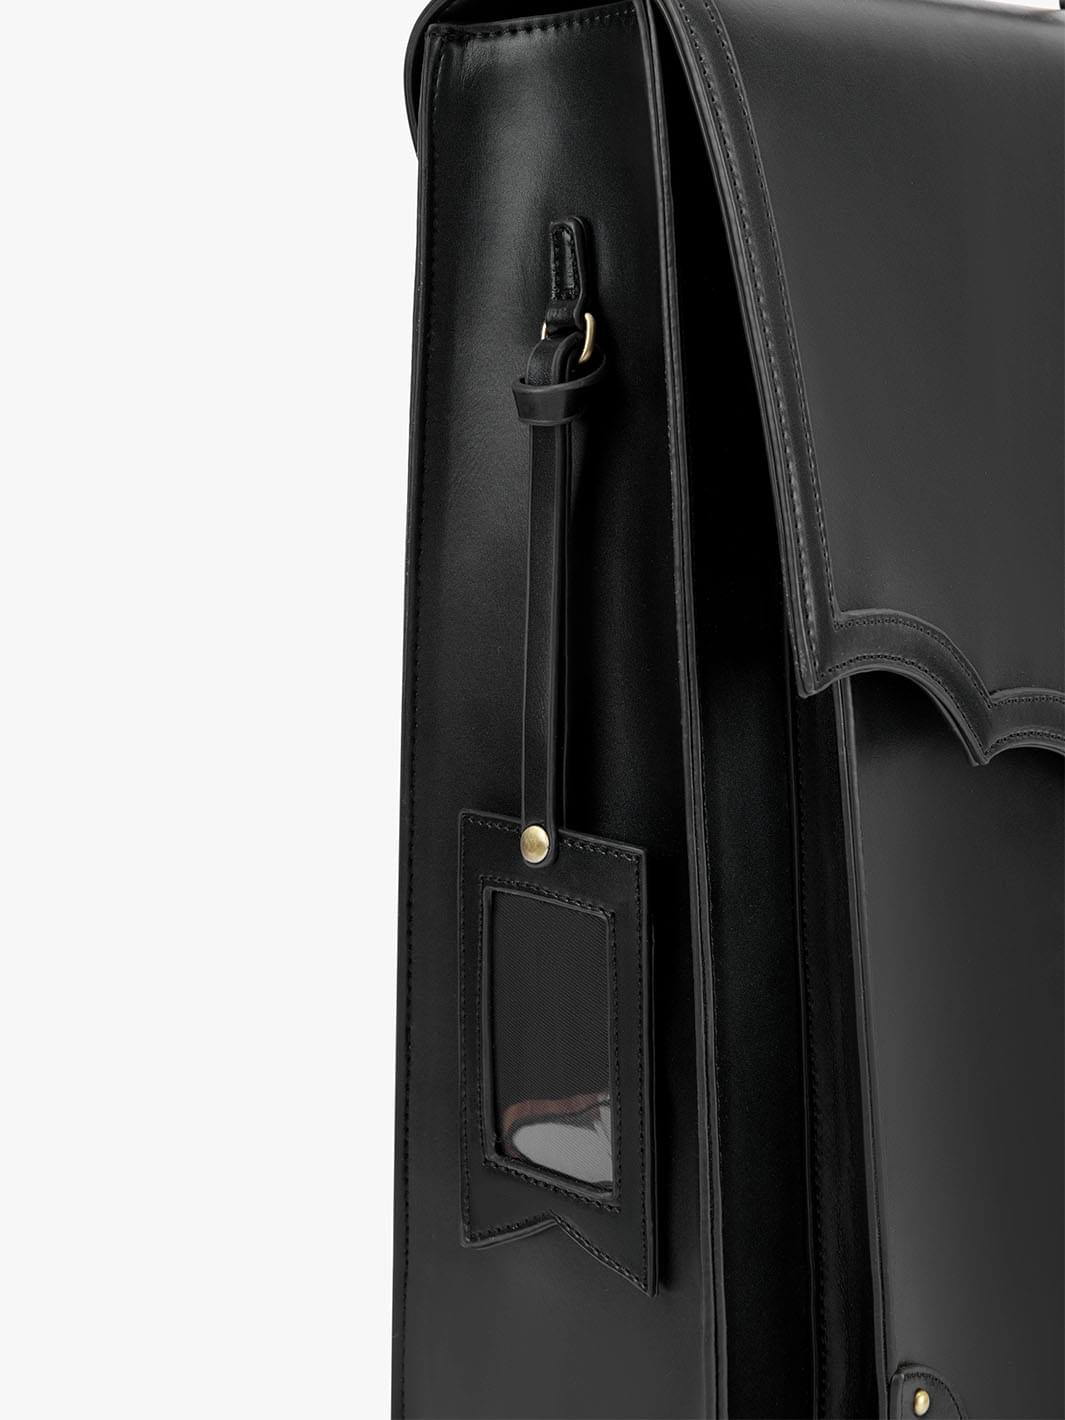 Black Vintage Backpack with Card Pocket - Ecosusi Black Backpack